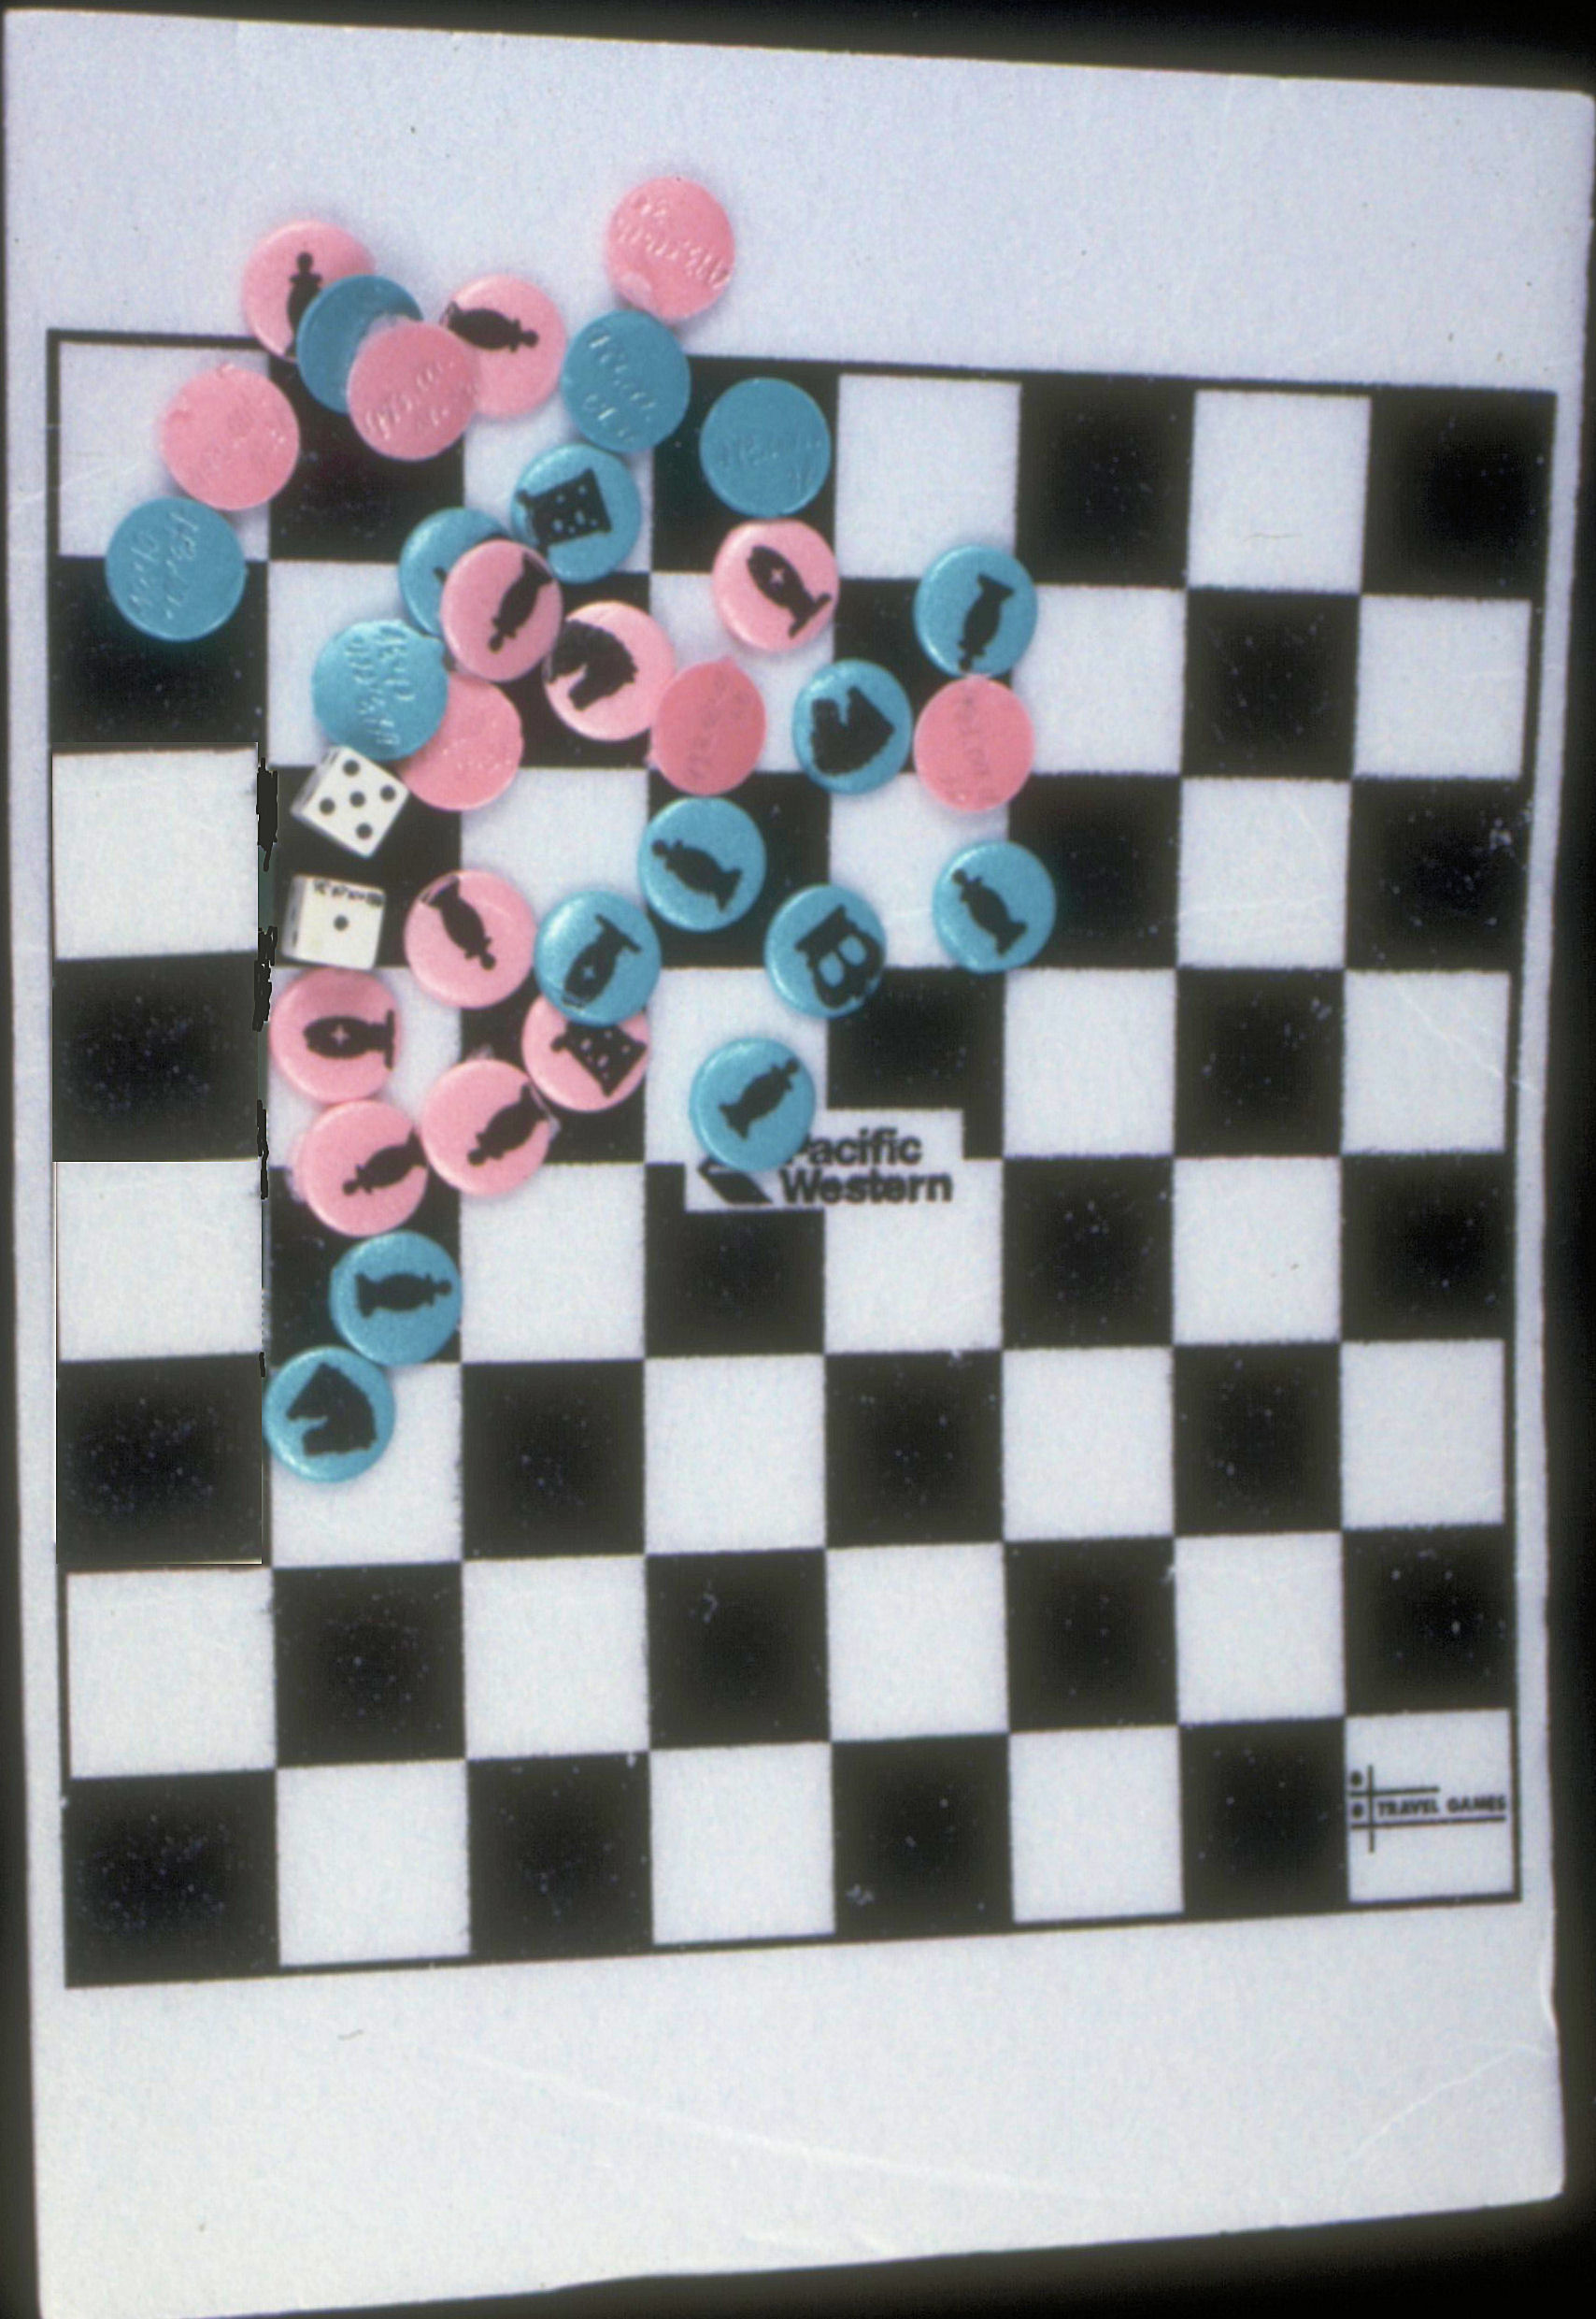 Styrofoam Chess Set